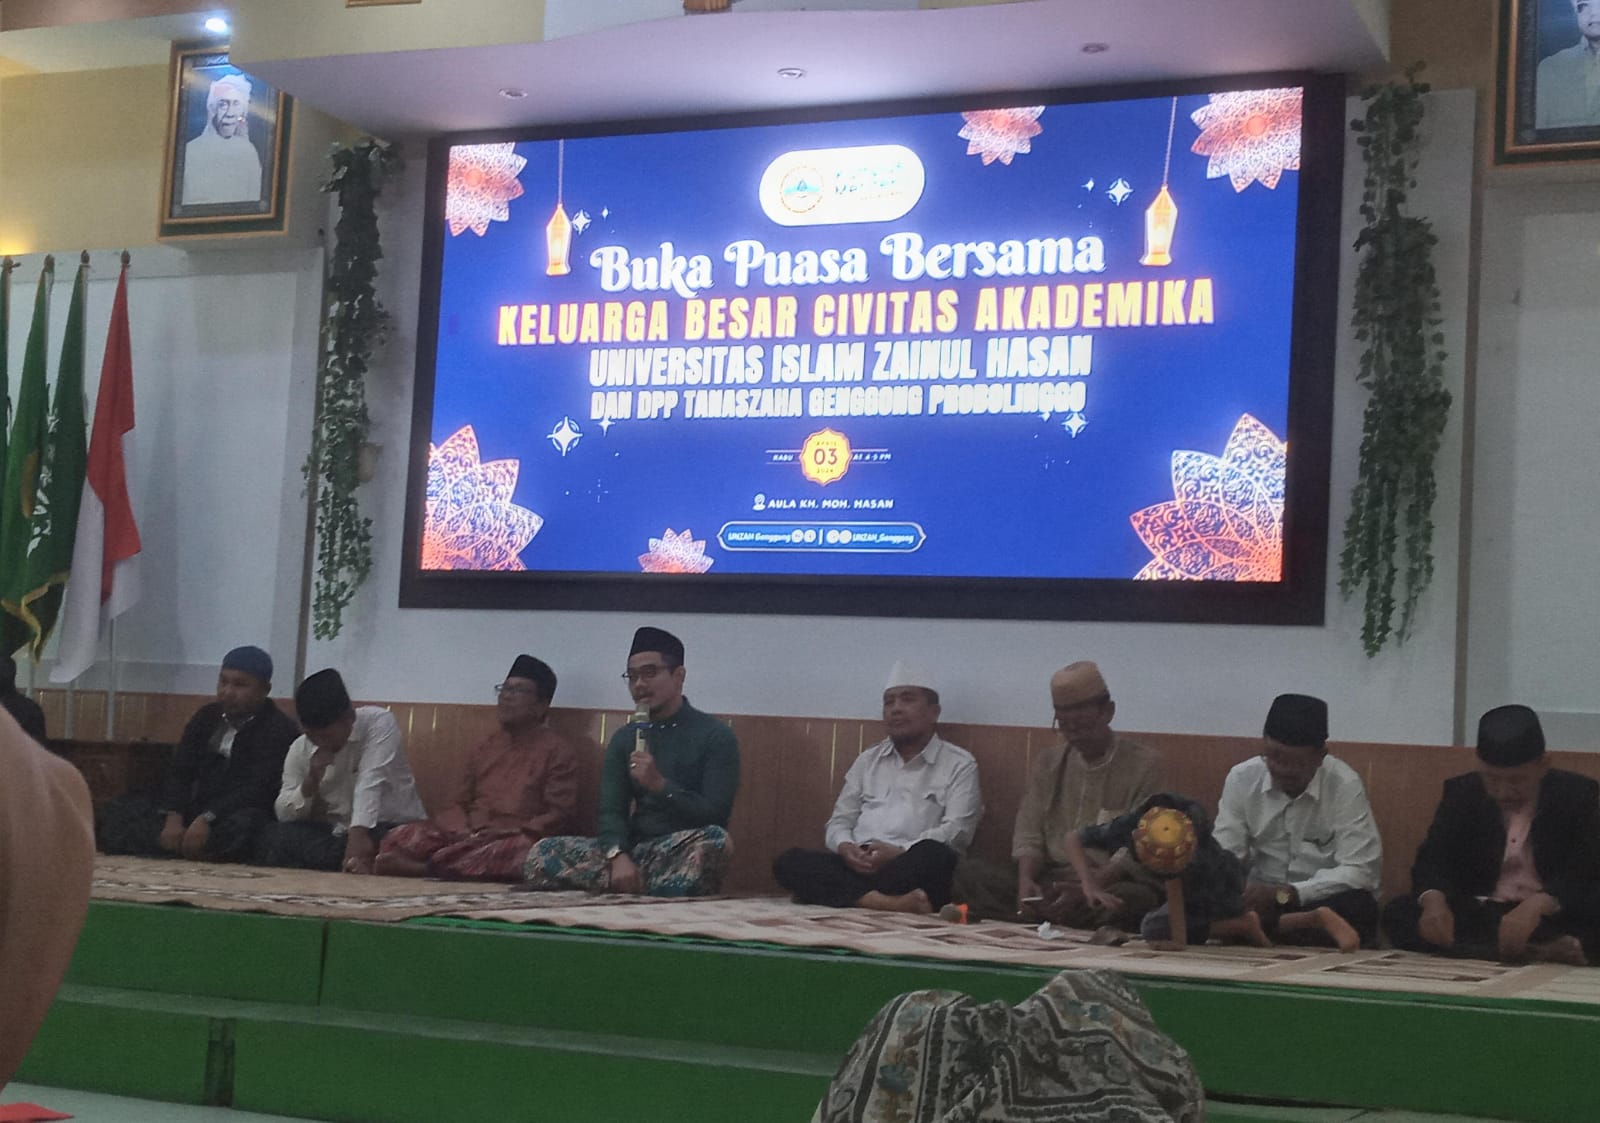 UNZAH Genggong Kraksaan Probolinggo Gelar Buka Bersama dalam Suasana Ramadhan yang Penuh Keharmonisan